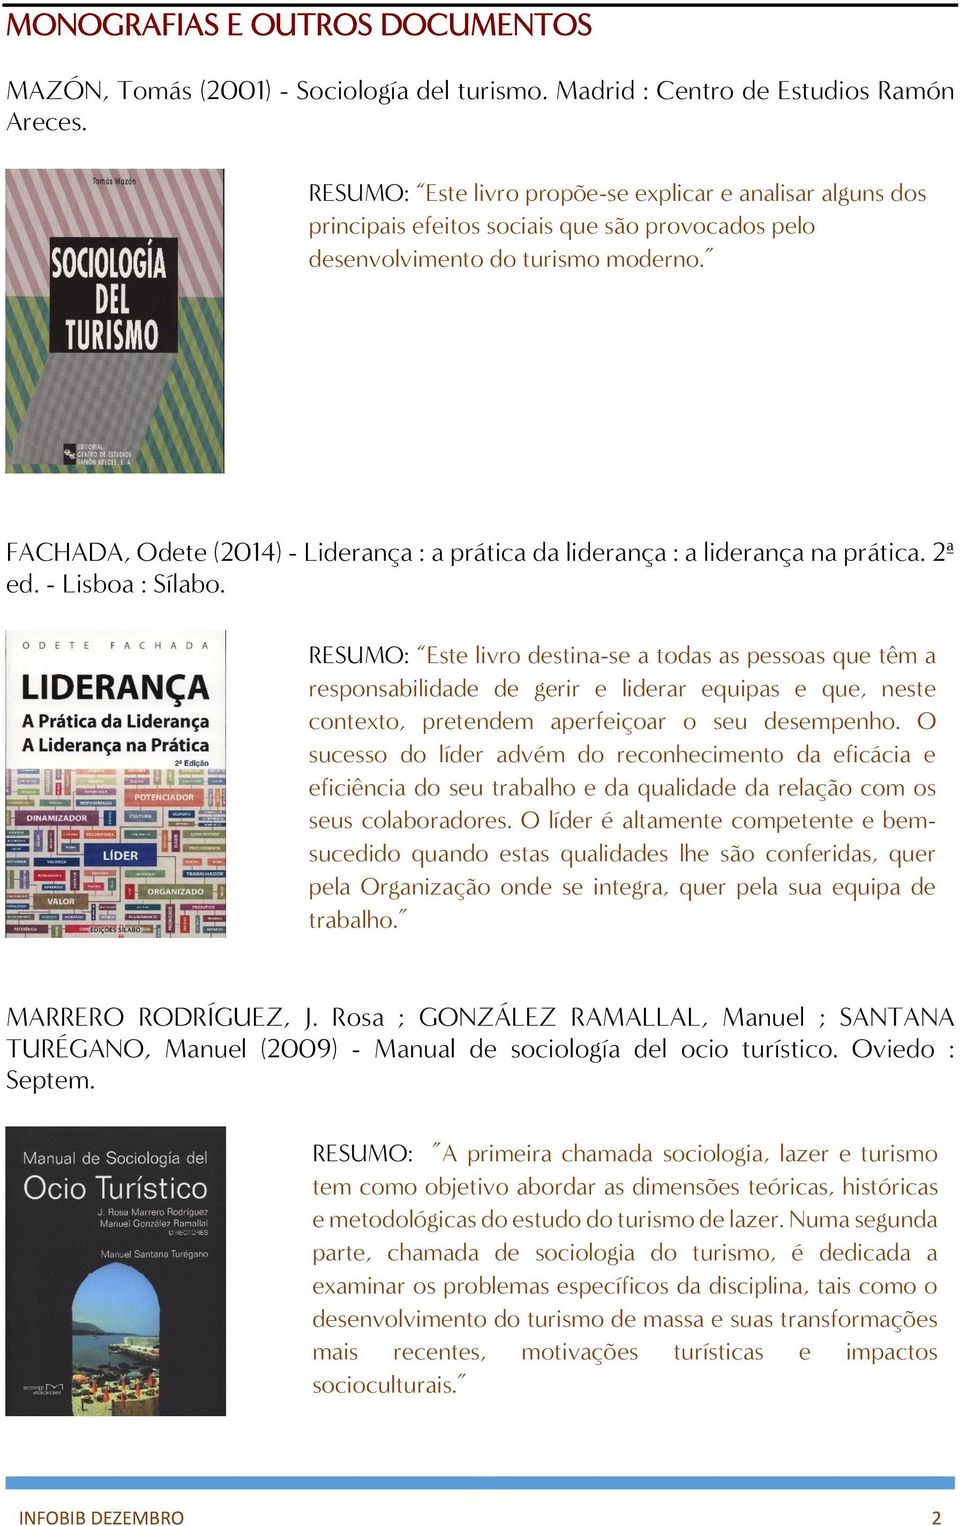 FACHADA, Odete (2014) - Liderança : a prática da liderança : a liderança na prática. 2ª ed. - Lisboa : Sílabo.